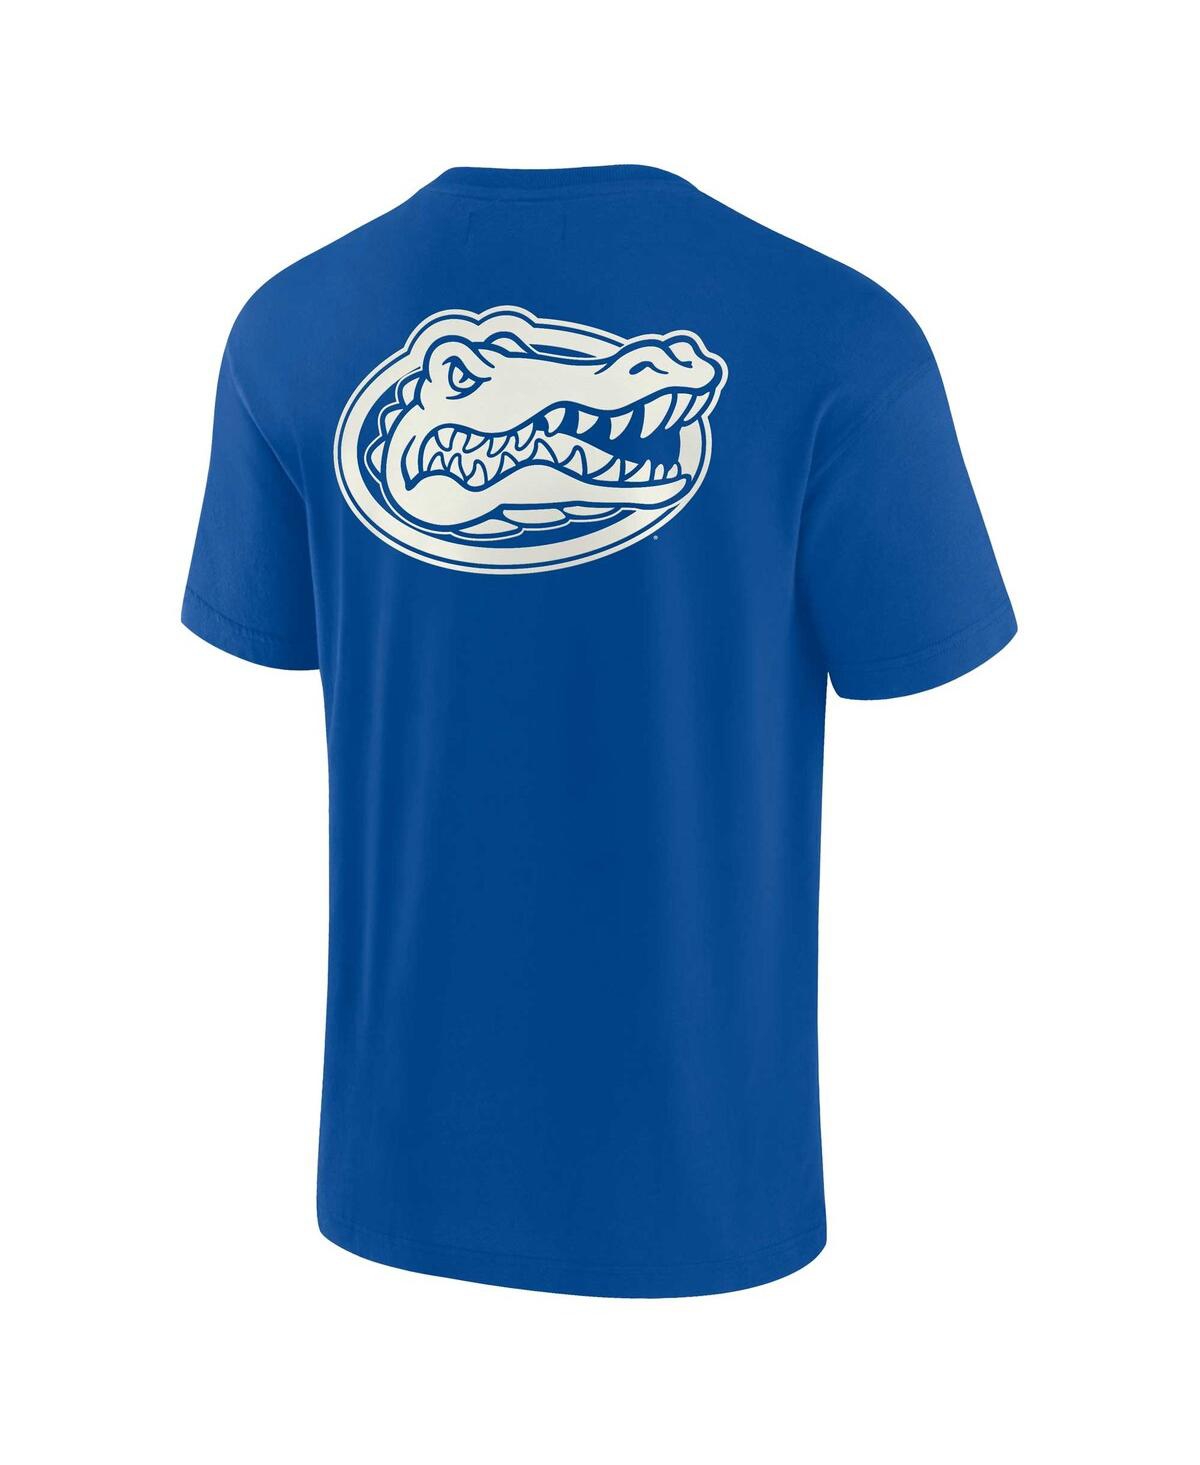 Shop Fanatics Signature Men's And Women's  Royal Florida Gators Super Soft Short Sleeve T-shirt